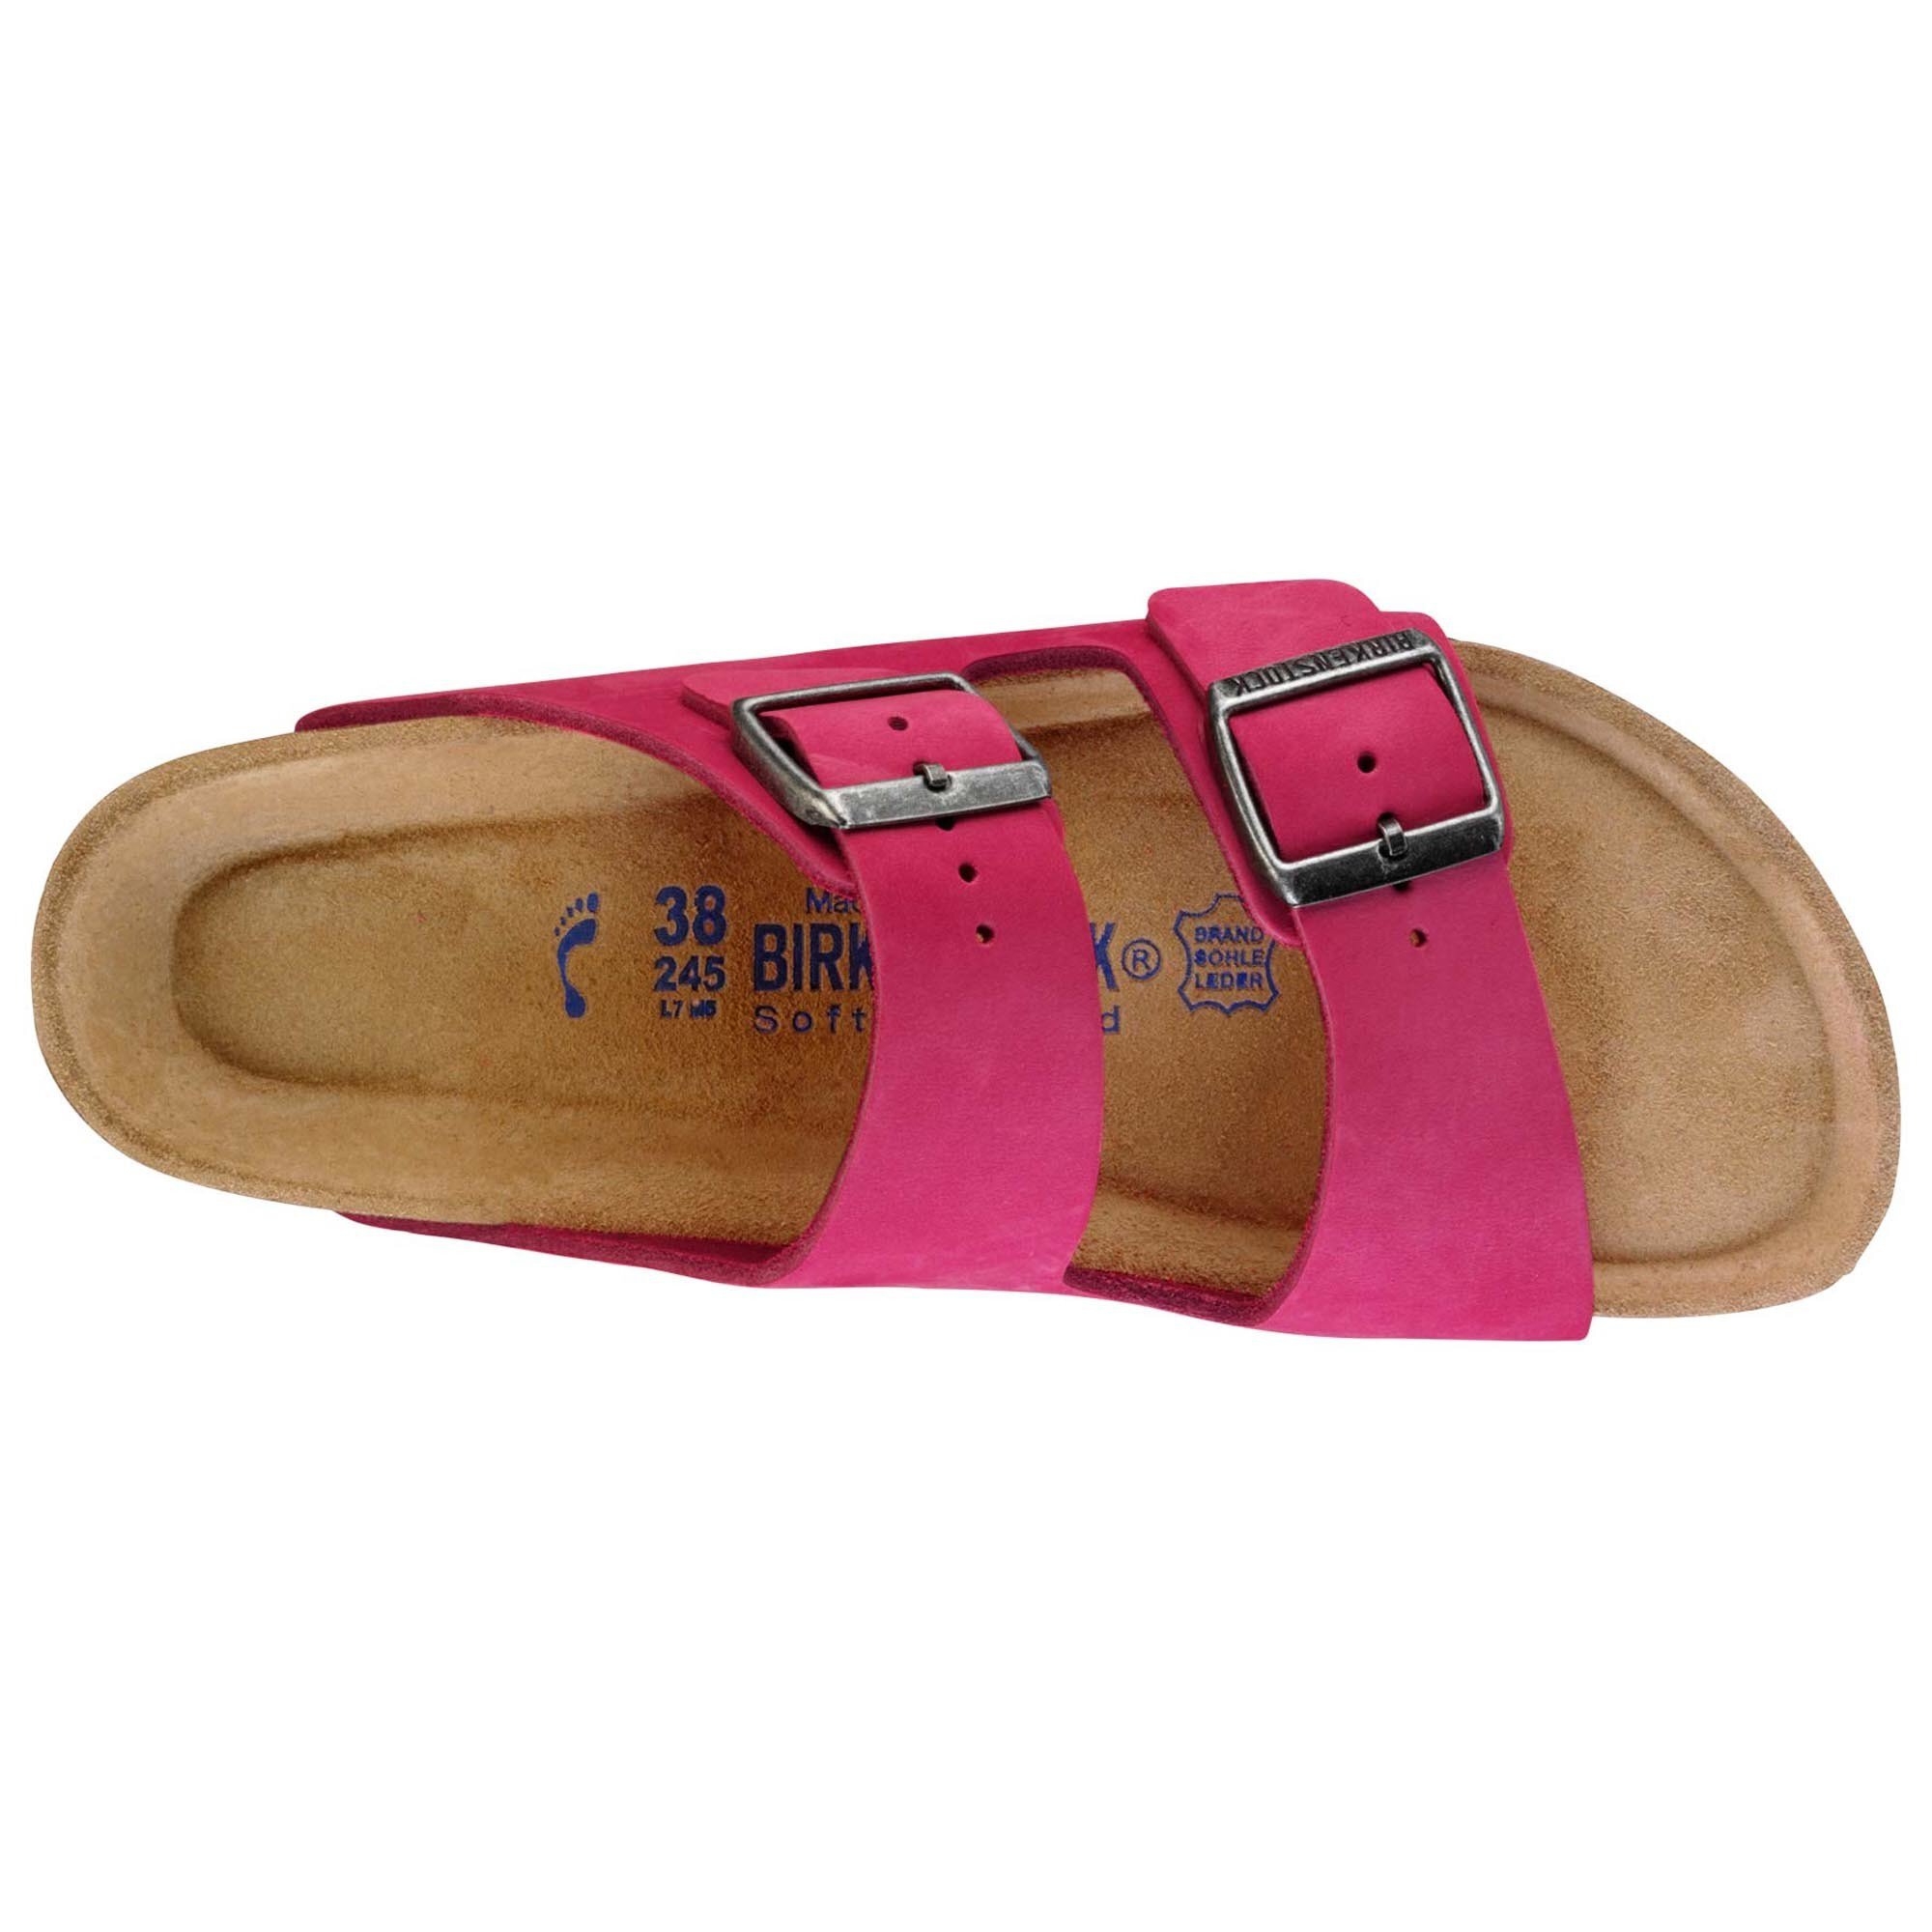 birkenstock women's pink sandals